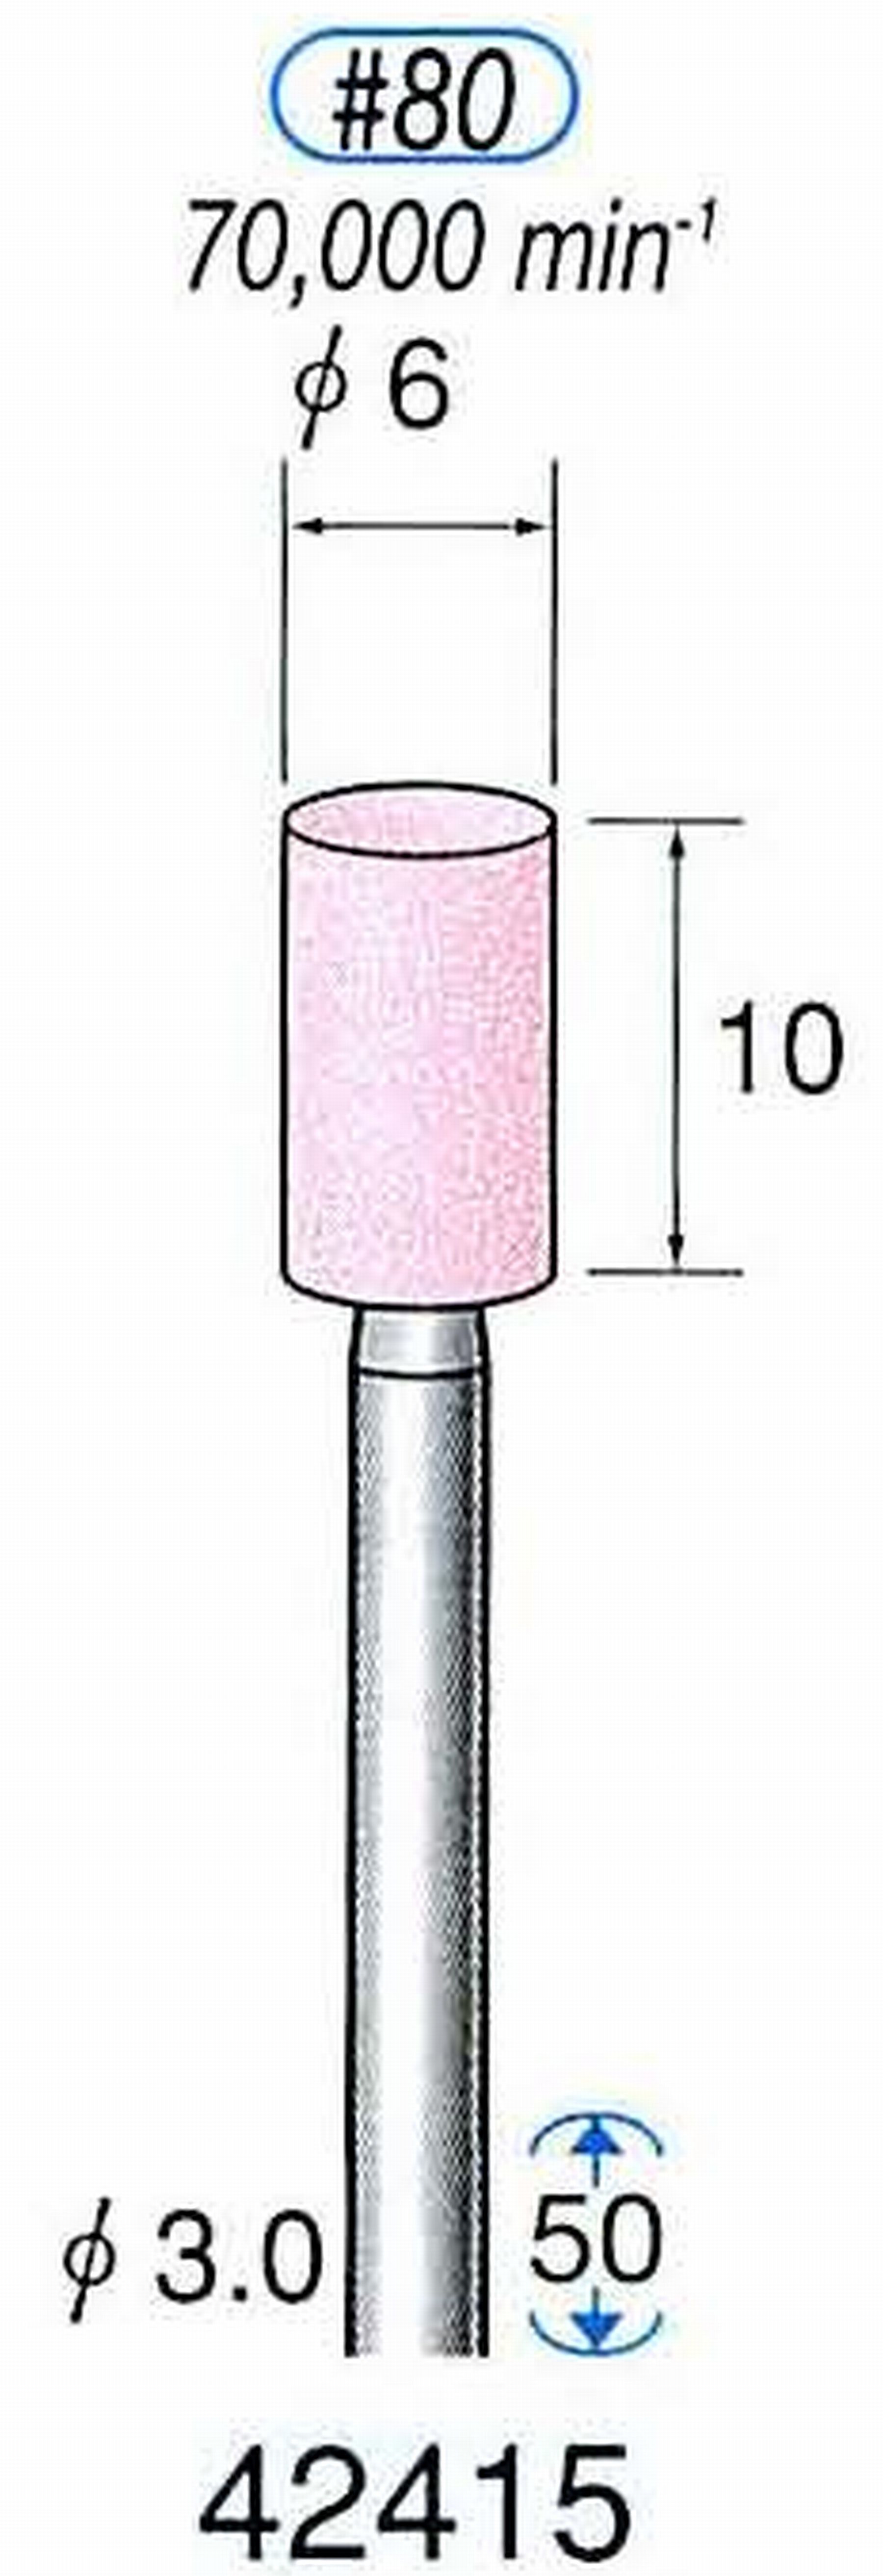 ナカニシ/NAKANISHI 軸付砥石(WA砥粒) 一般研削用 軸径(シャンク) φ3.0mm 42415